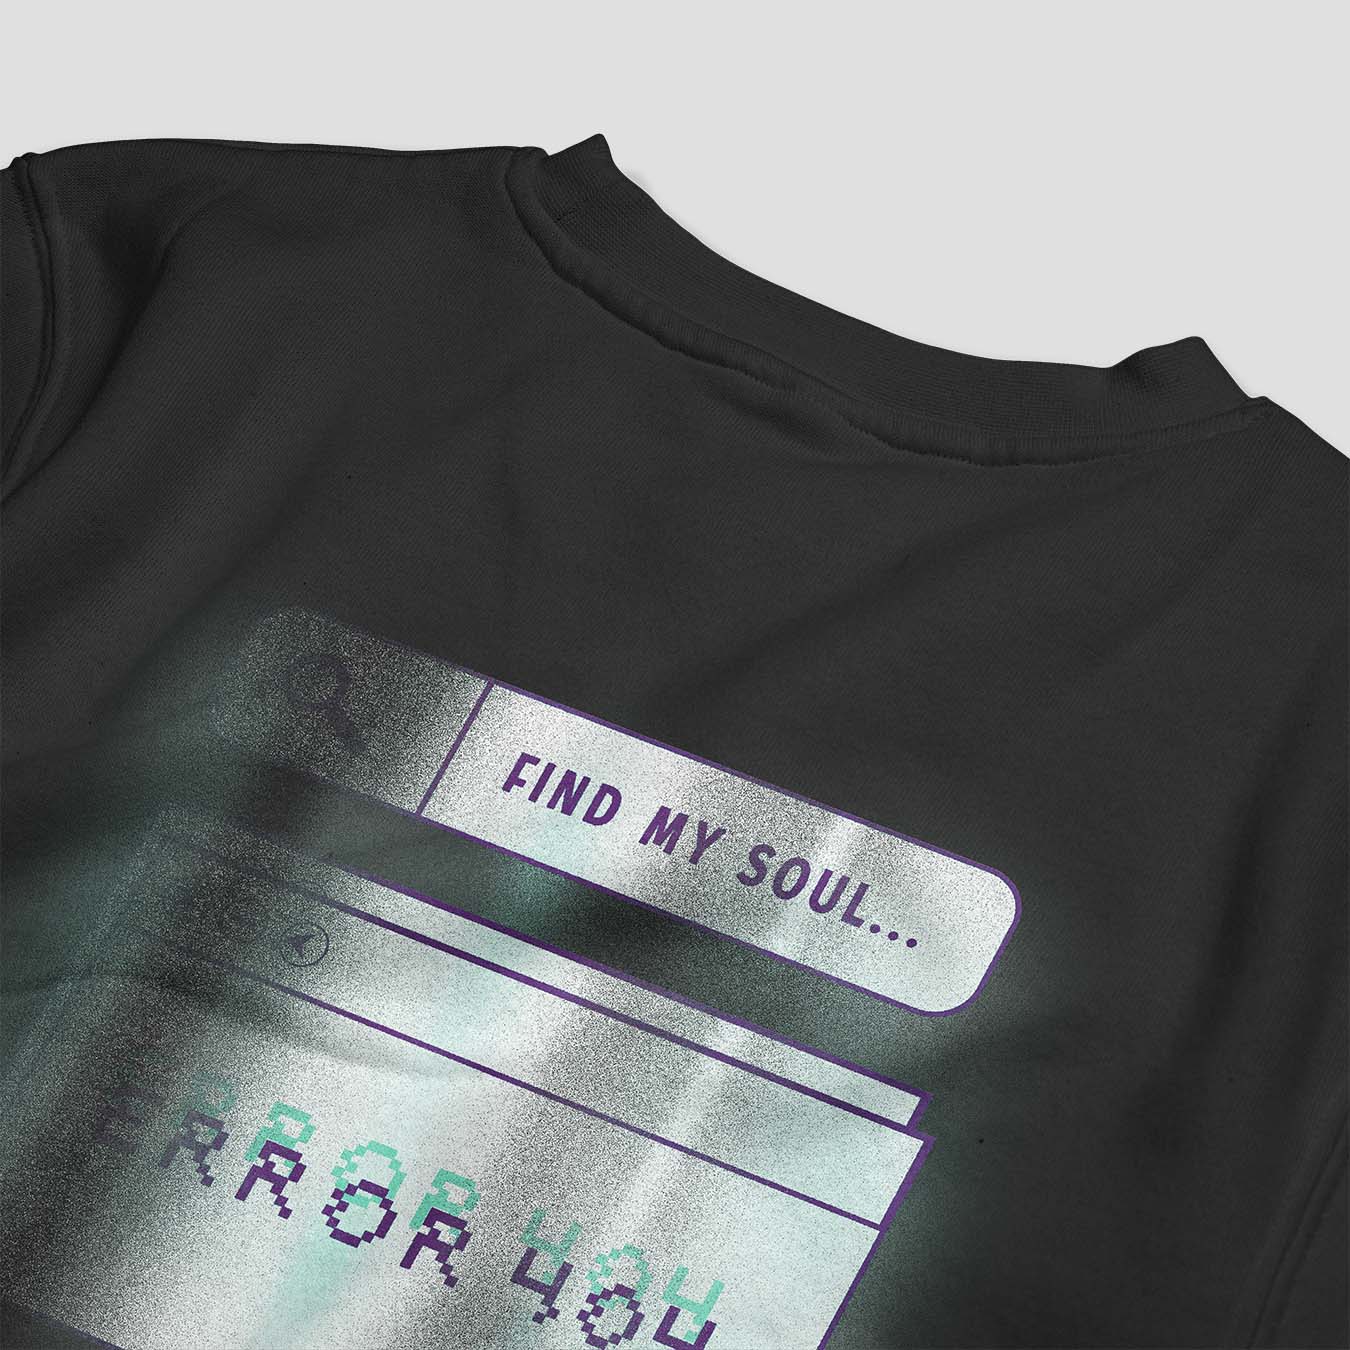 Find My Soul Printed Sweatshirt - keos.life